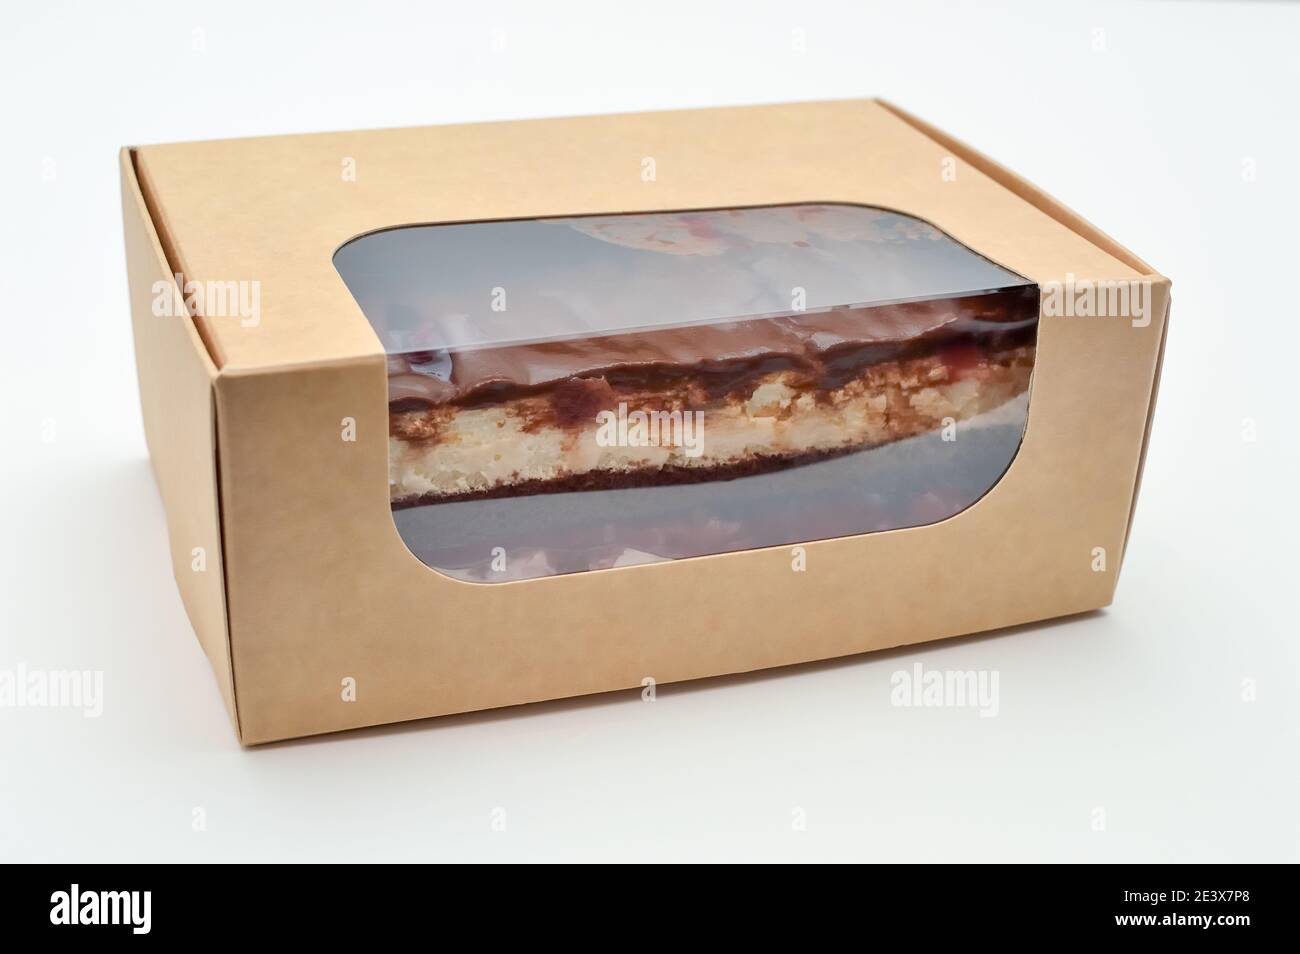 boîte en carton avec gâteau, plats à emporter, commandes en ligne et livraison dans un emballage écologique jetable Banque D'Images